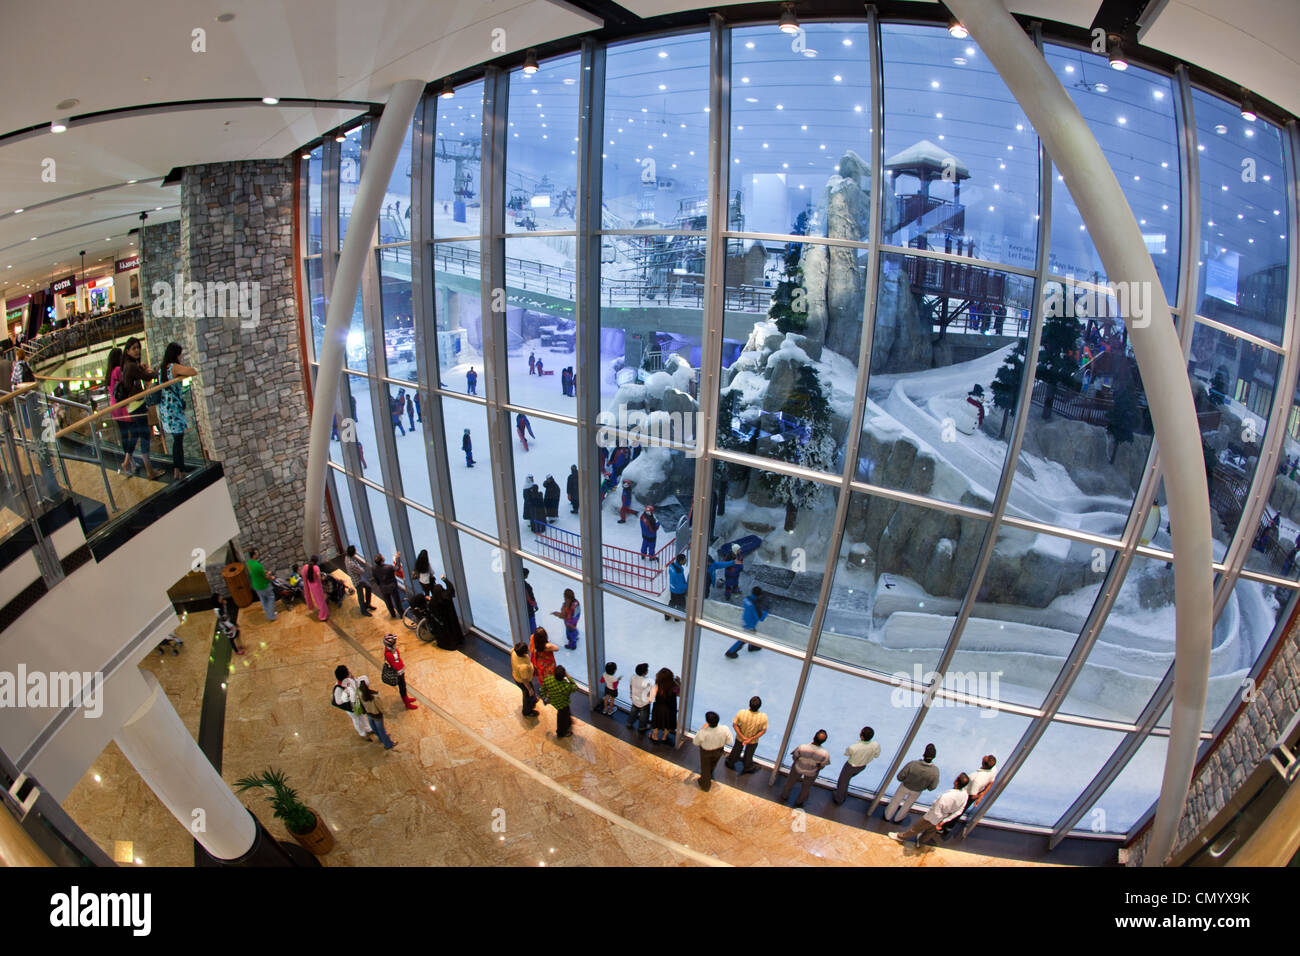 Dubai Mall of Emirates Ski dubai, Indoor skiing, United Arab Emirates, Arabian Peninsula, Middle East, Asia Stock Photo